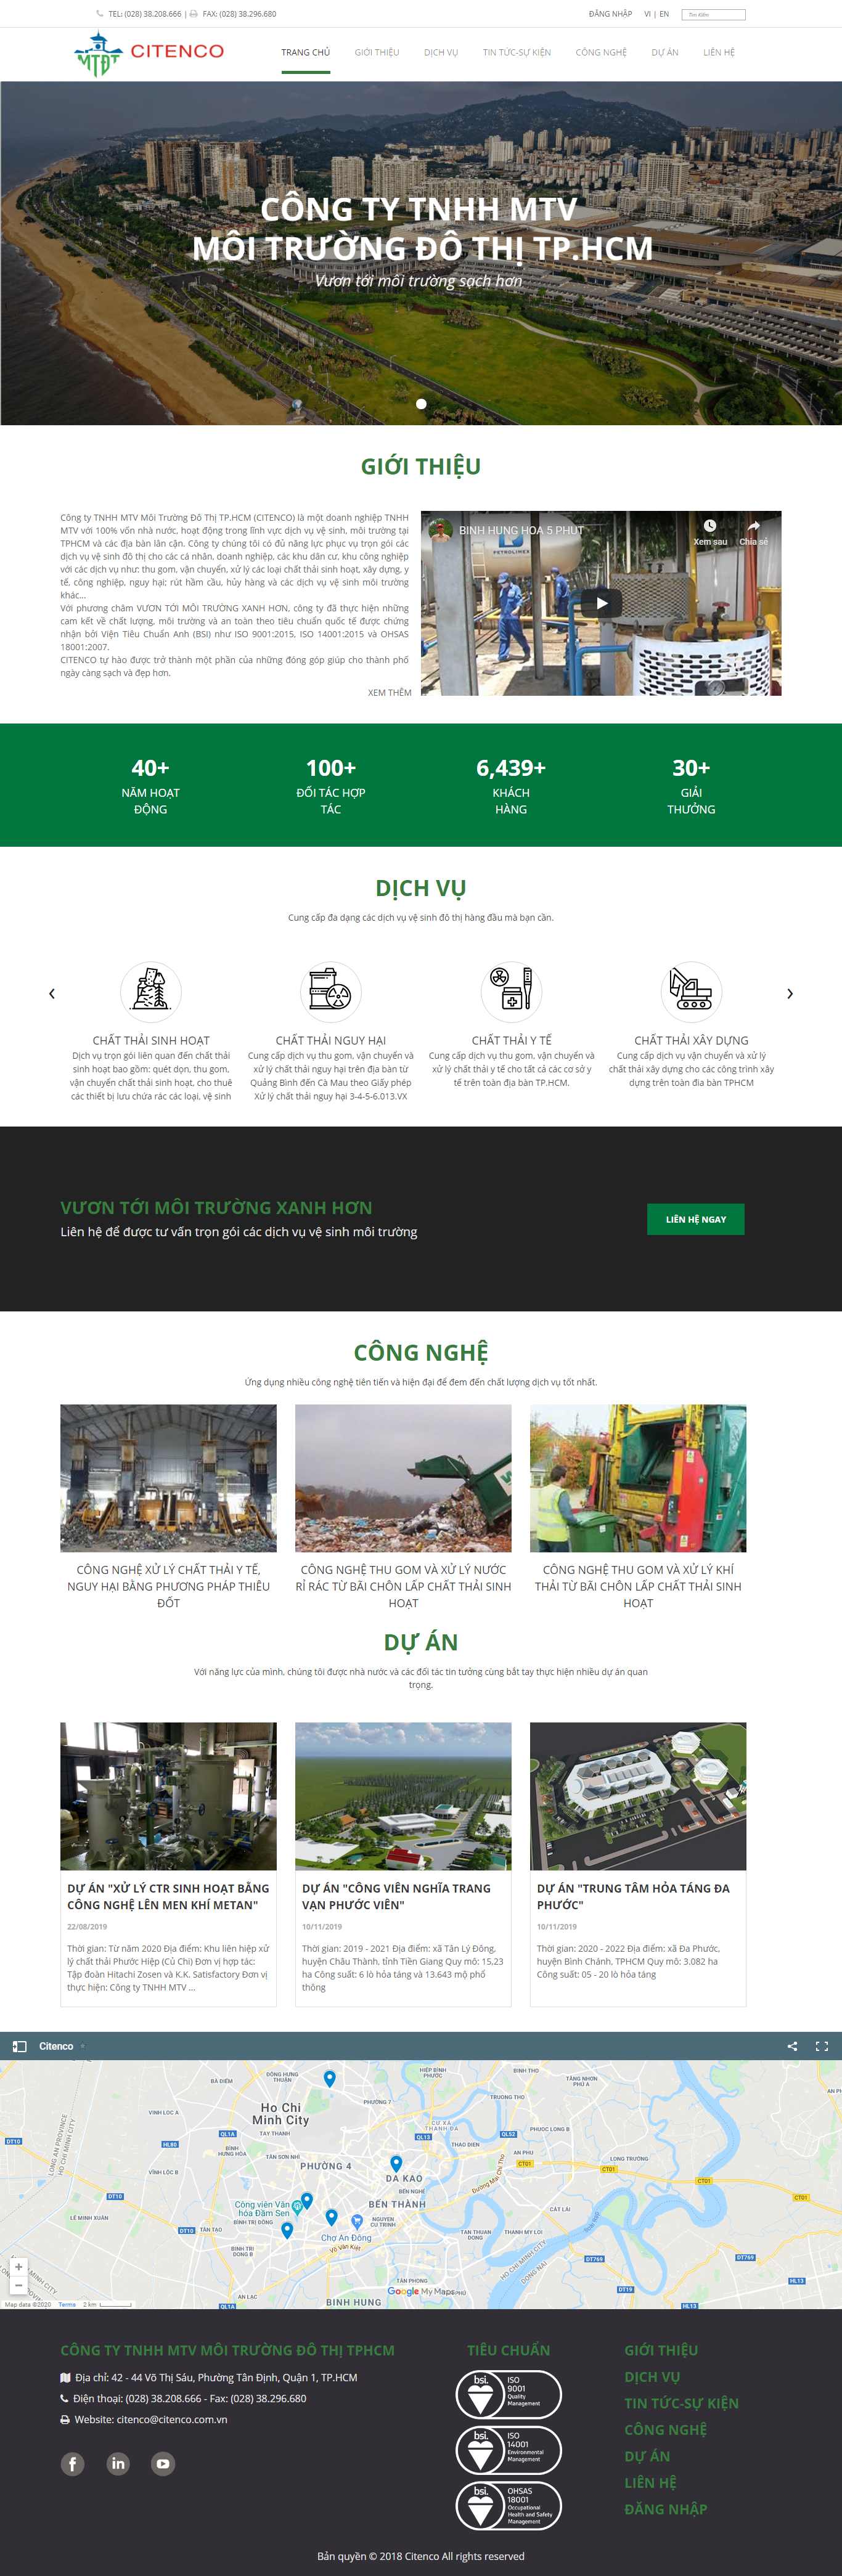 Thiết kế Website công ty môi trường - www.citenco.com.vn